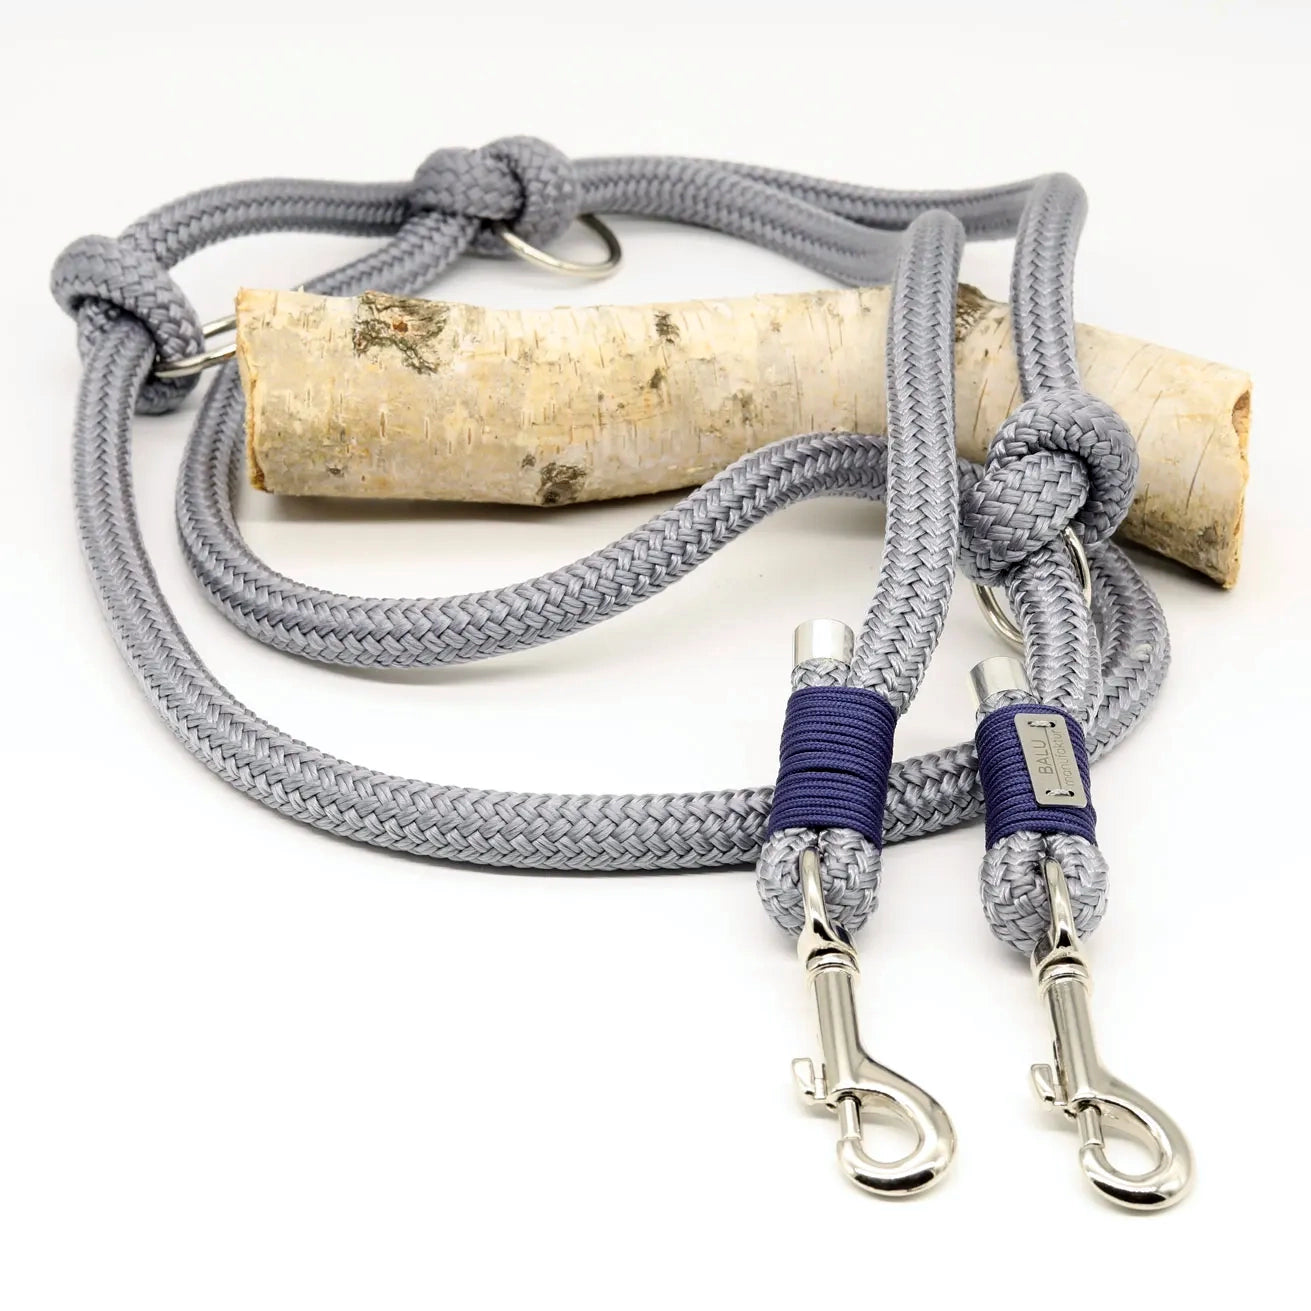 Verstellbare Hundeleine aus Seil 2m in grau mit silbernen Metallelementen